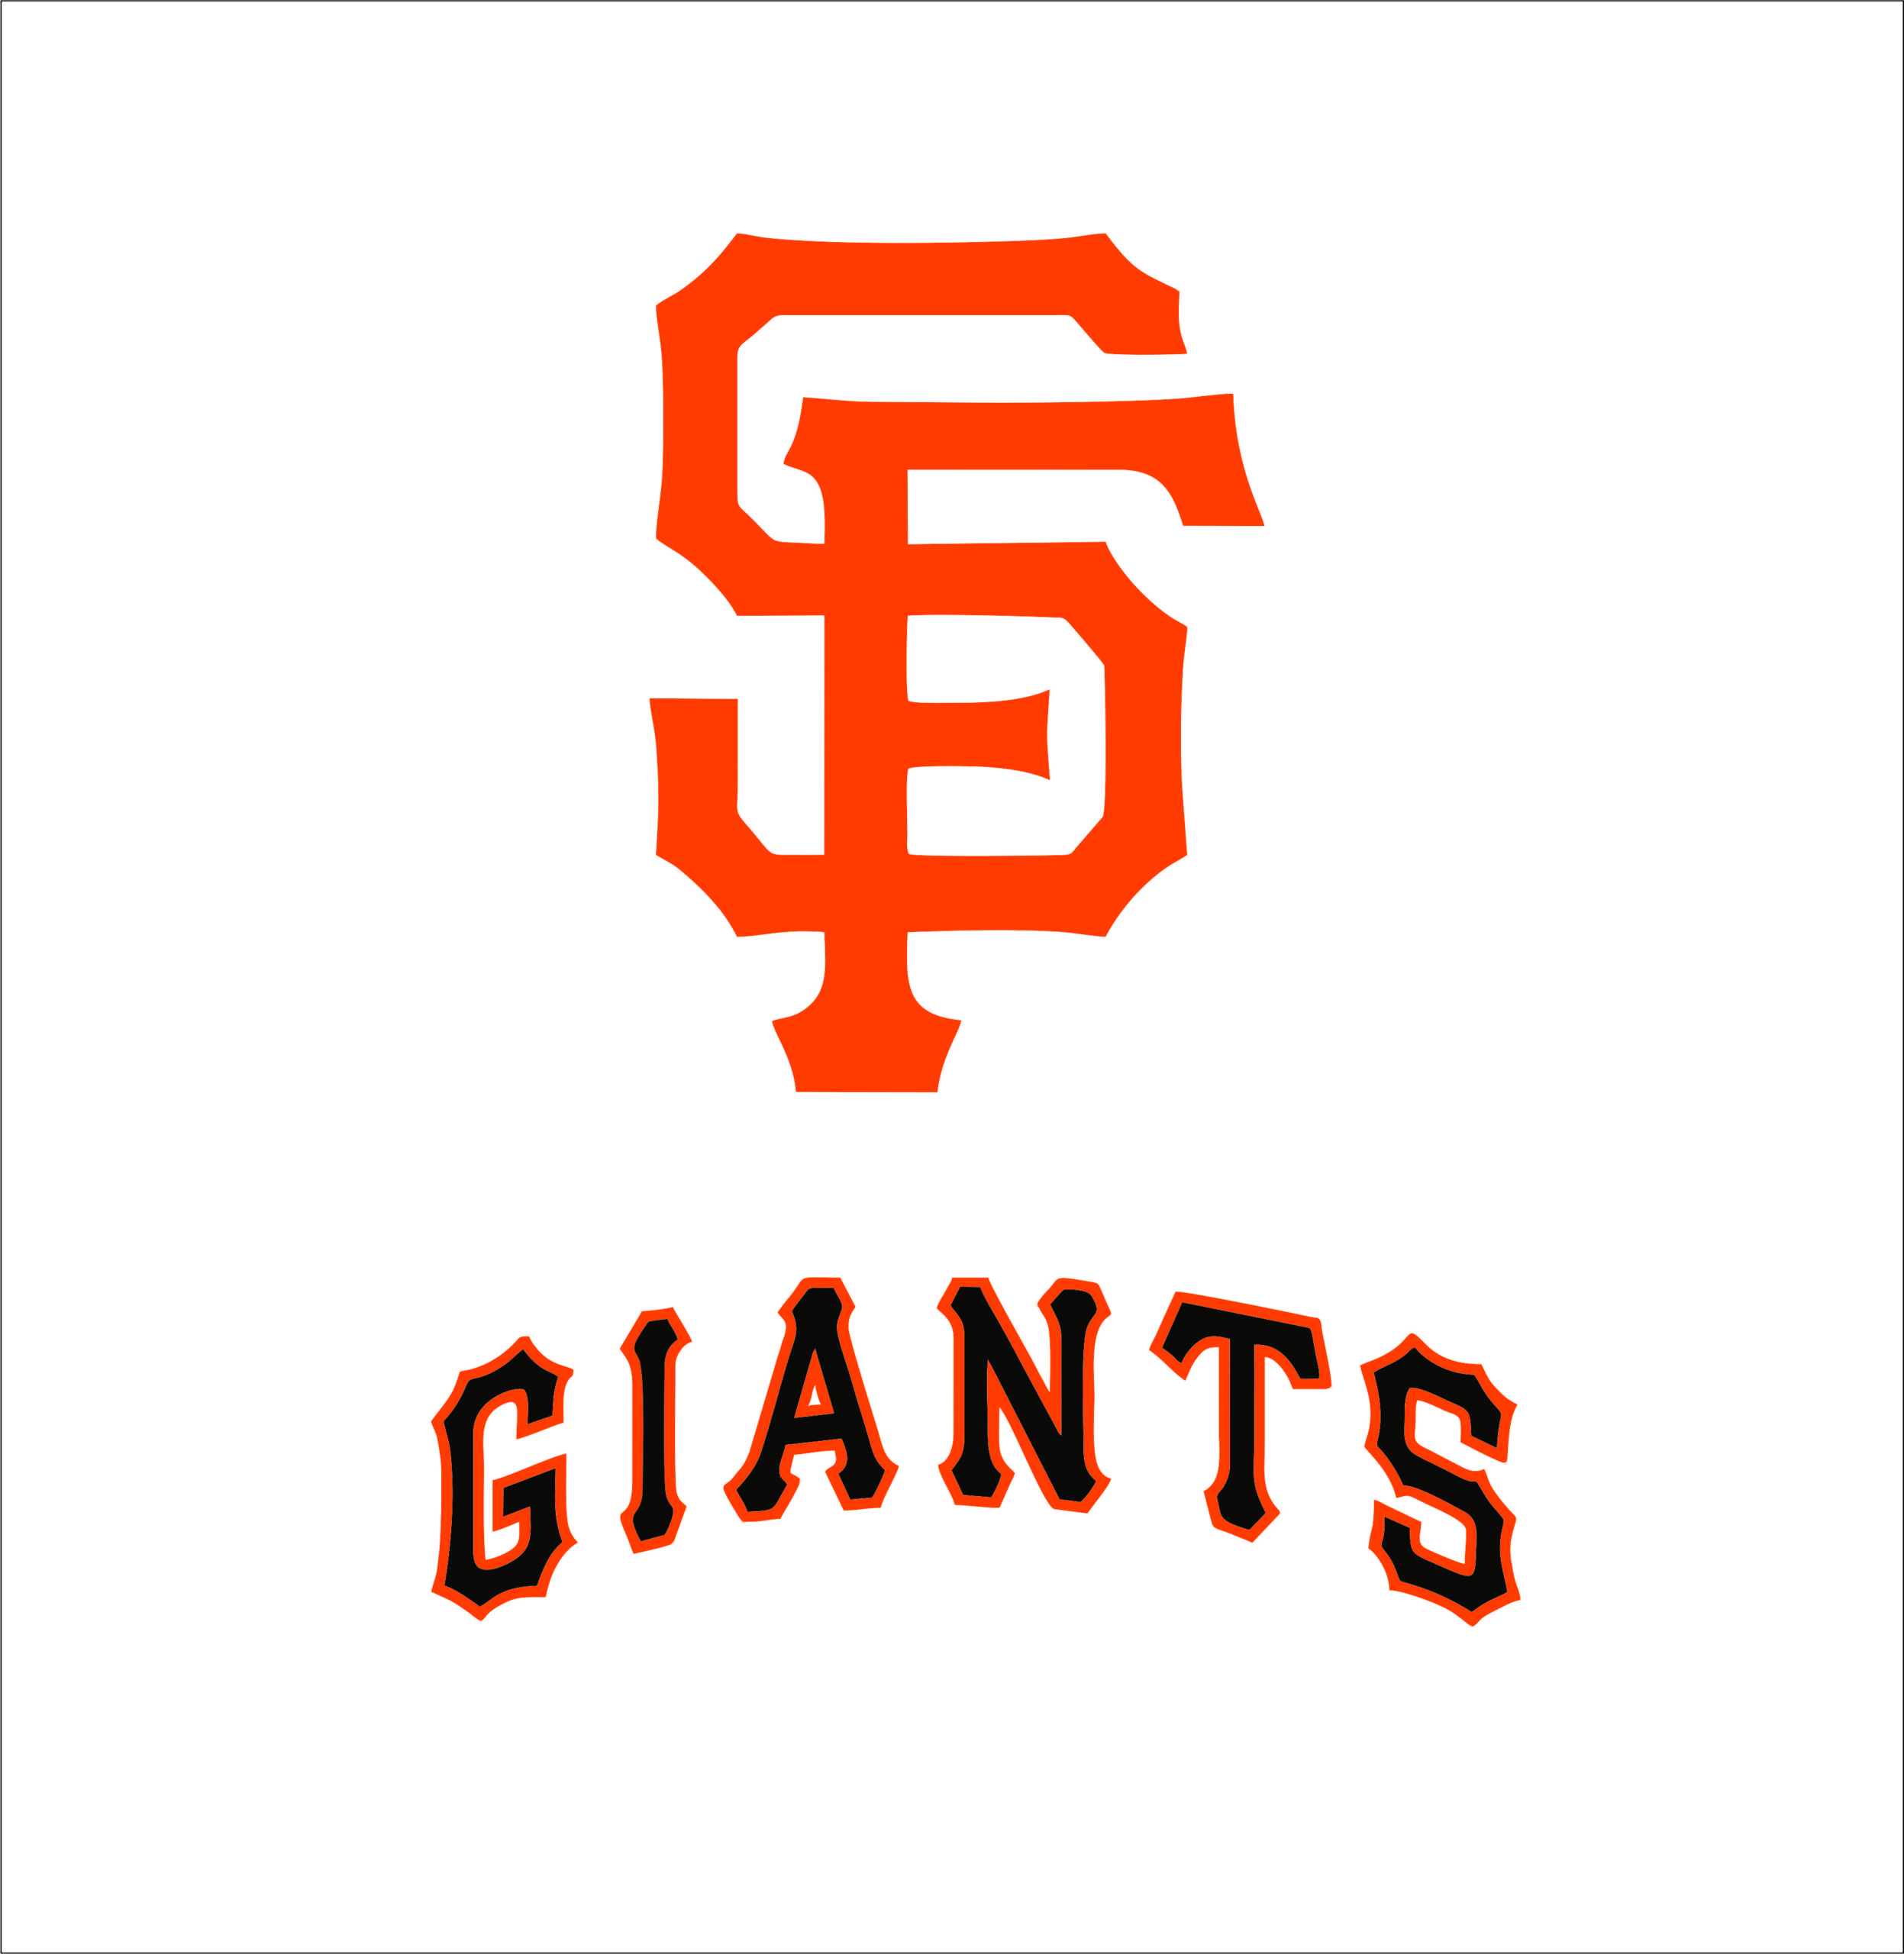 Download San Francisco Giants logo | SVGprinted